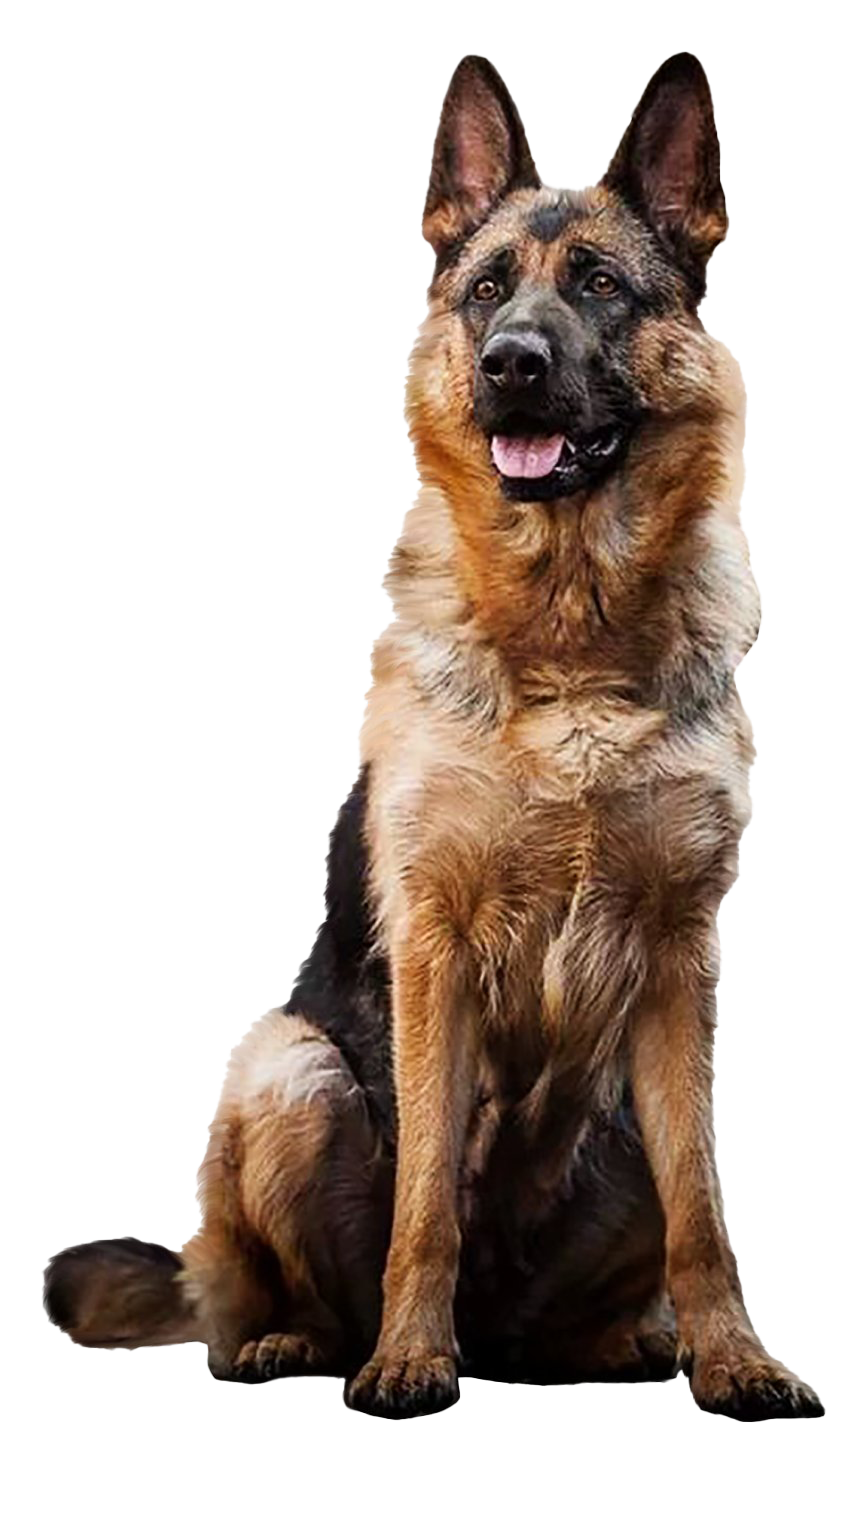 Image de PNG de chien de berger allemand